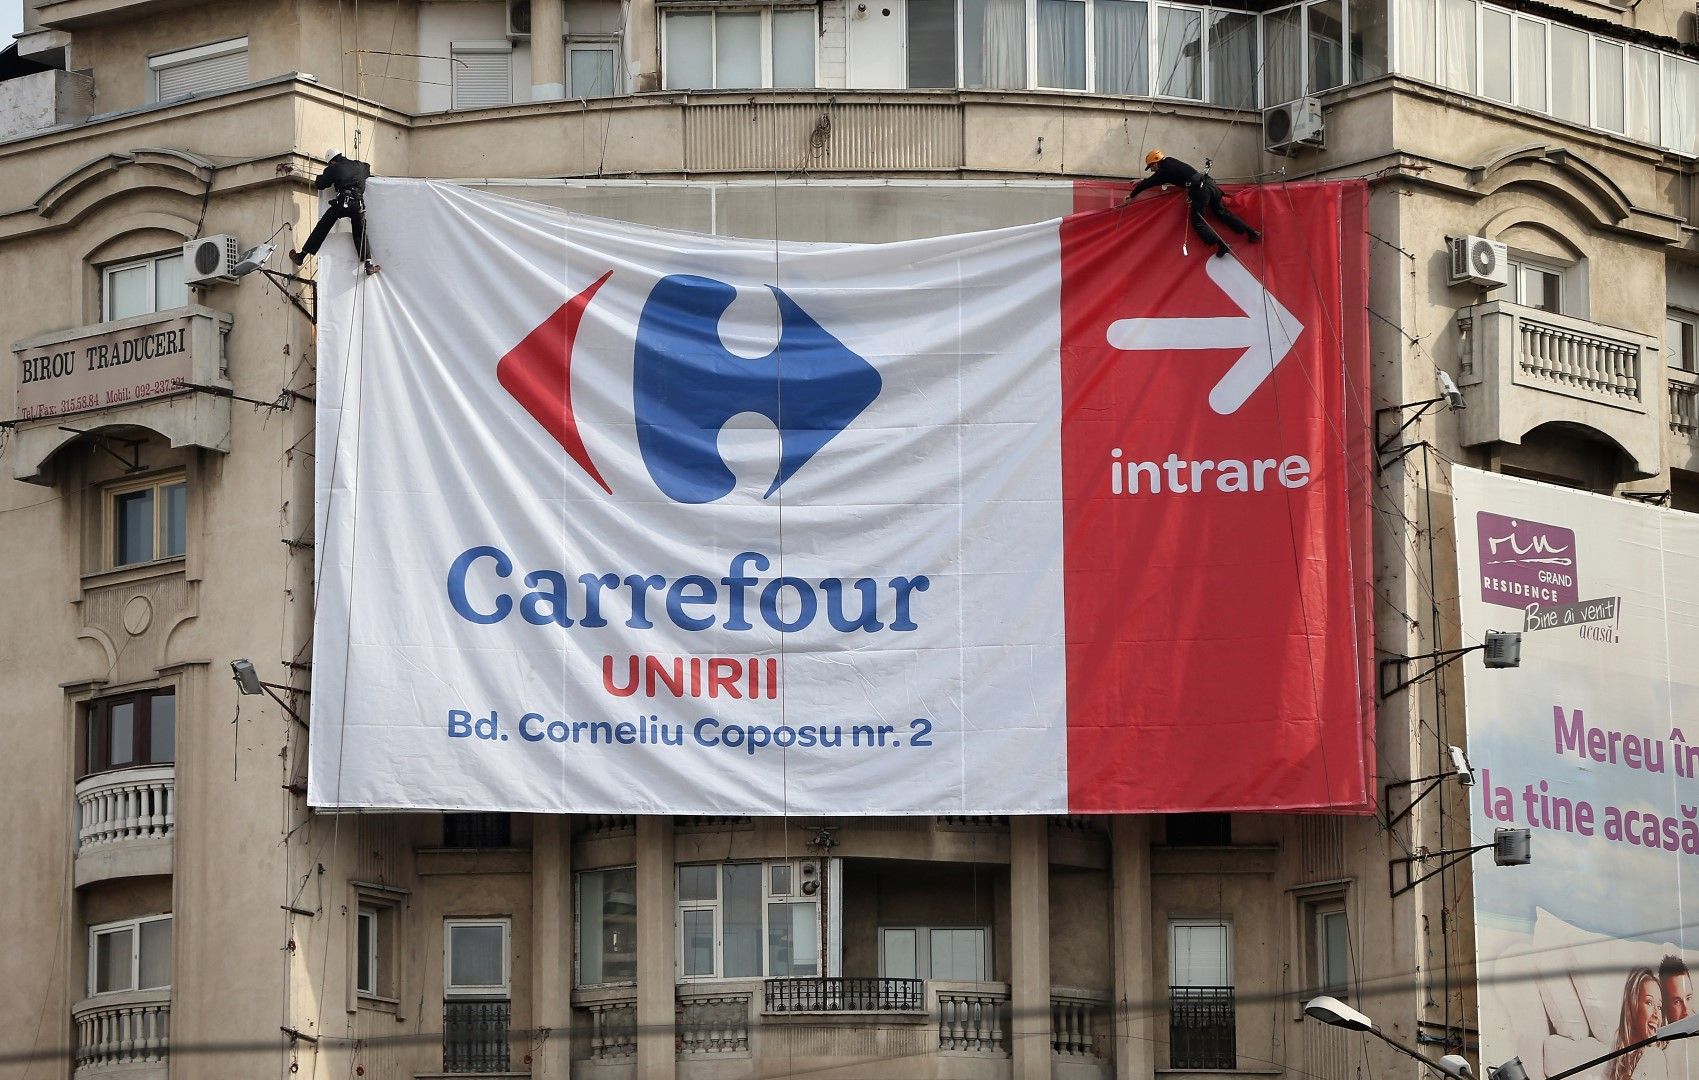 Букурещ, 18 март 2013 г. Голямо платно указва къде наблизо отваря супермаркет на "Карфур"